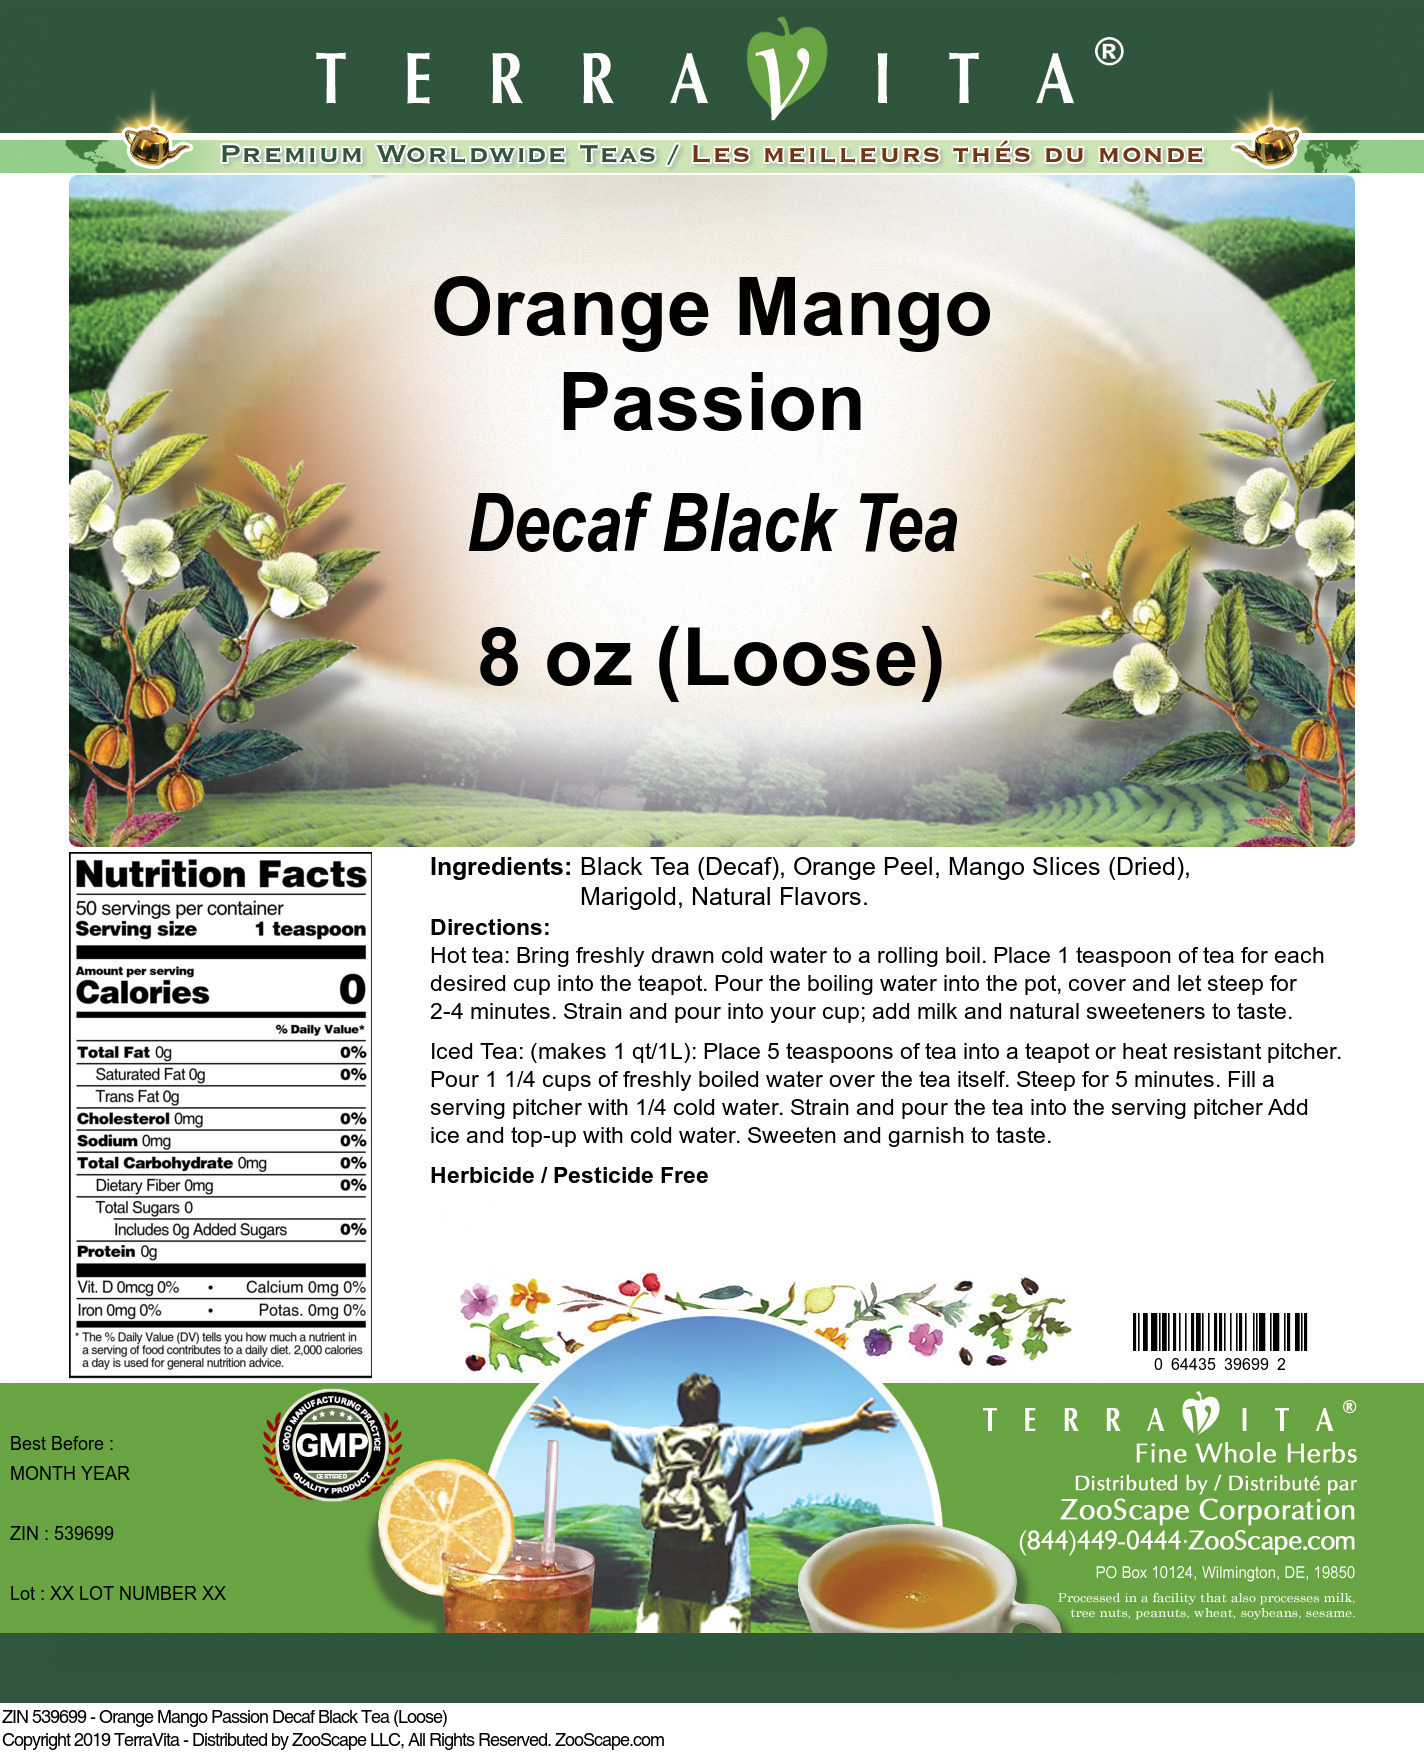 Orange Mango Passion Decaf Black Tea (Loose) - Label